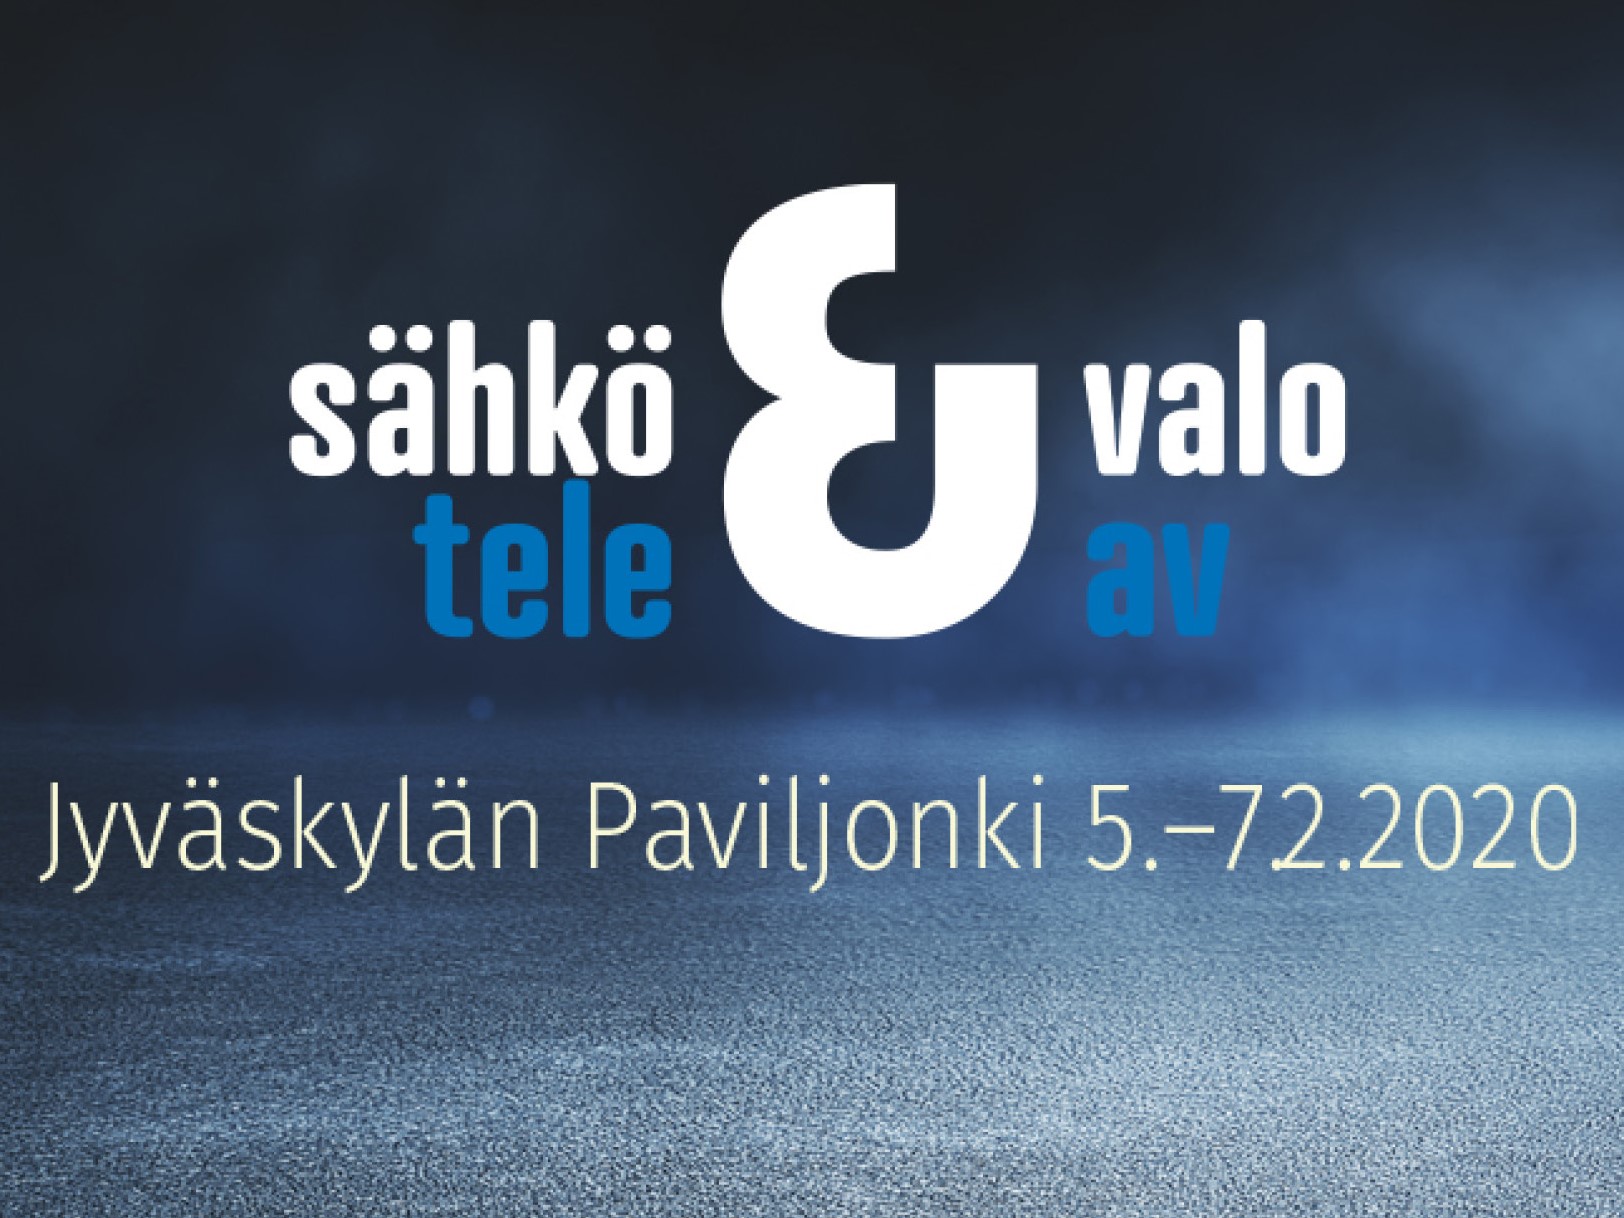 Nylund mukana Sähkömessuilla 5.-7.2.2020 Jyväskylässä